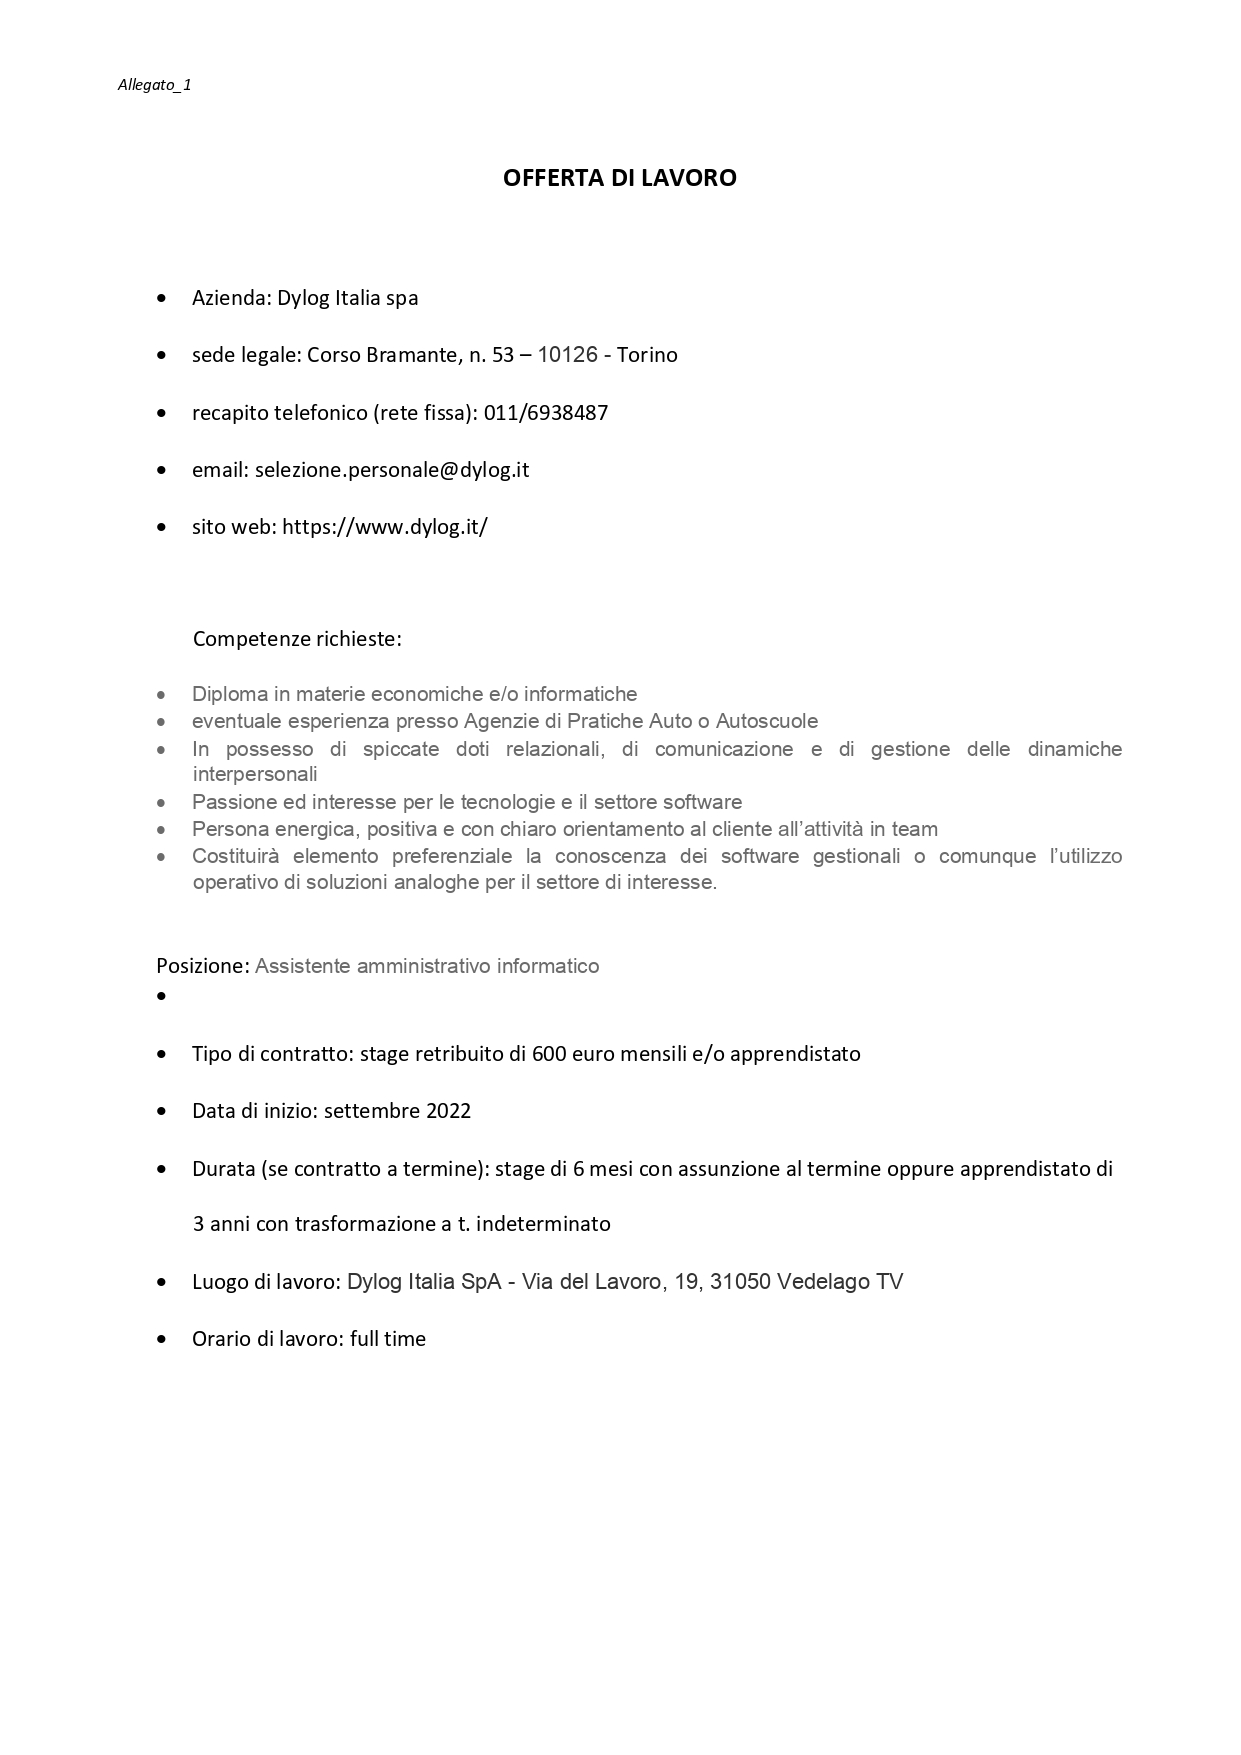 Allegato 1 Offerta di lavoro Dylog Italia spa 1 page 0001